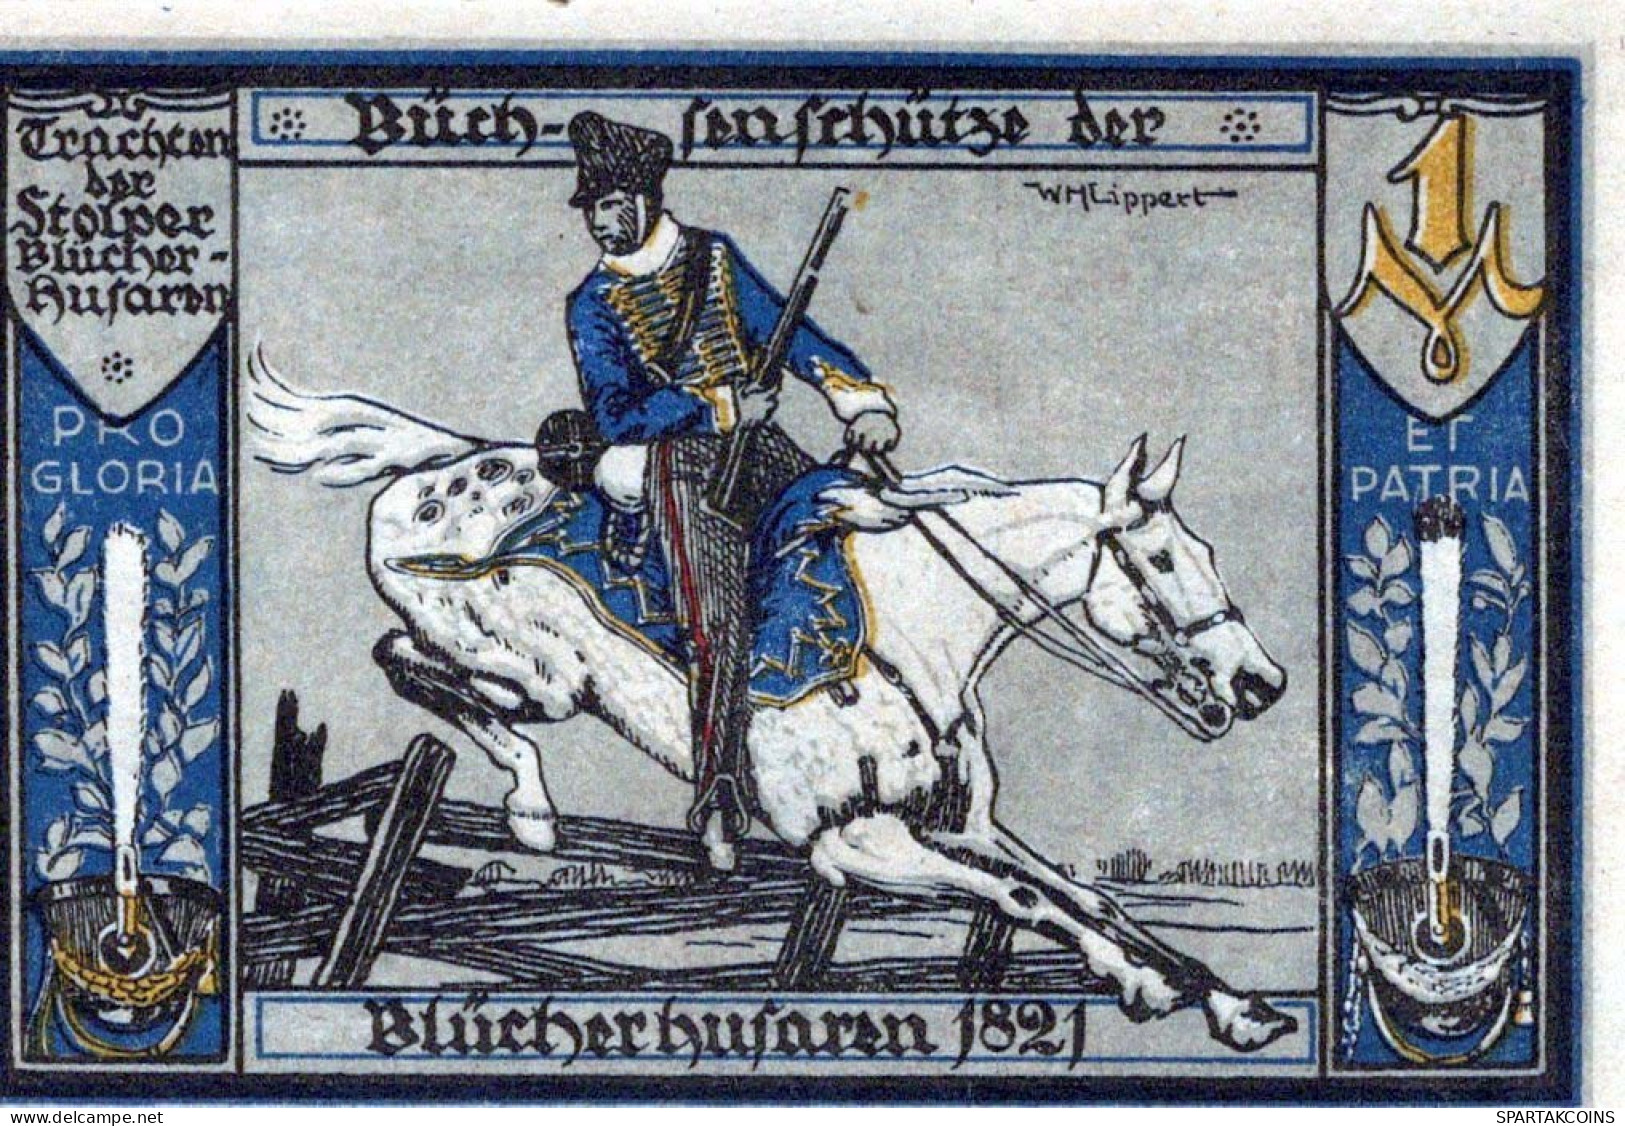 1 MARK 1922 Stadt STOLP Pomerania UNC DEUTSCHLAND Notgeld Banknote #PD362 - [11] Local Banknote Issues